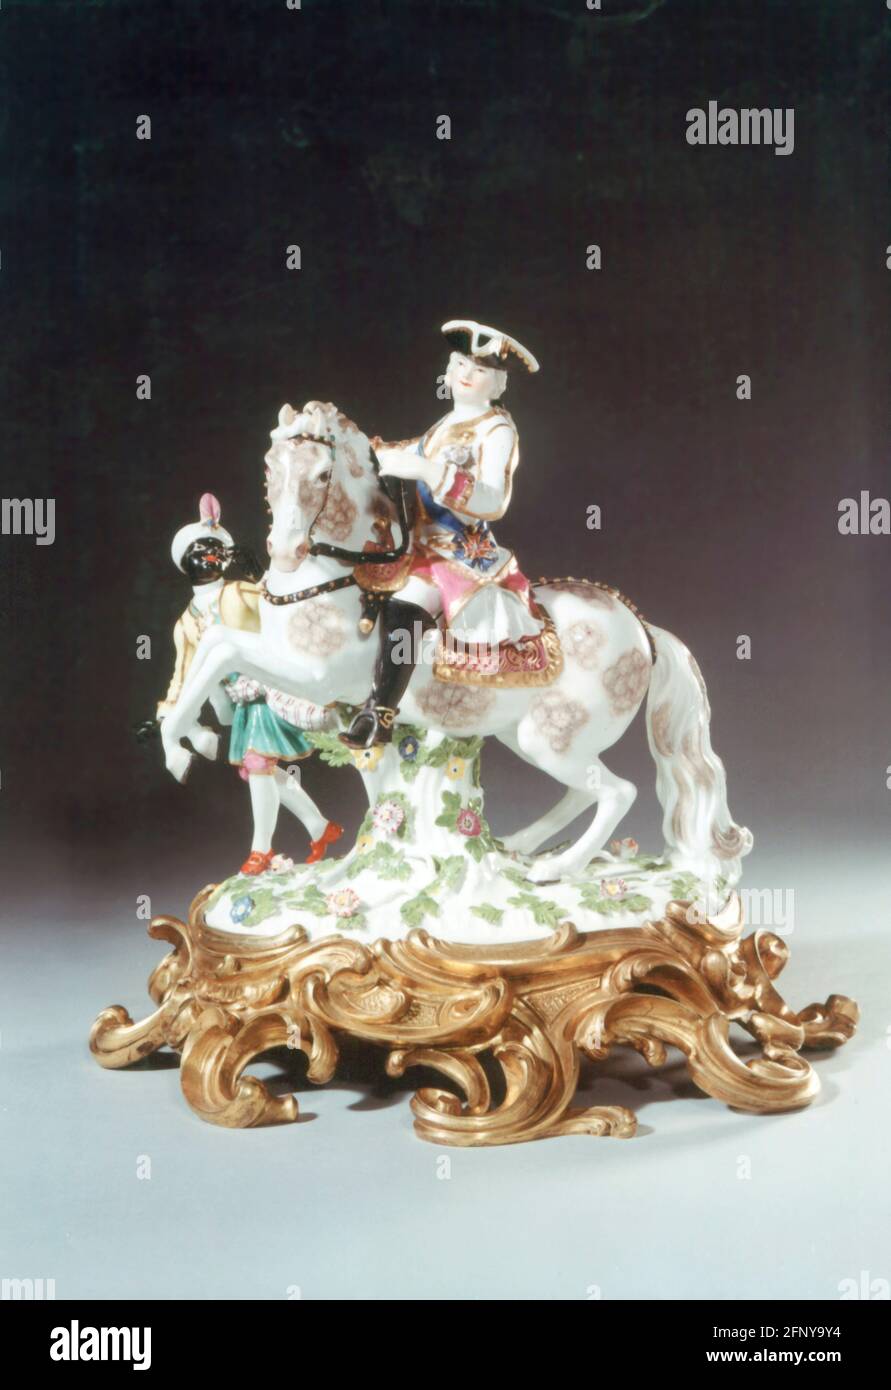 Bellas artes, porcelana, emperatriz Elizabeth de Rusia, diseño de Johann Joachim Kändler (1706 - 1775), LOS DERECHOS DE AUTOR DEL ARTISTA NO TIENEN QUE SER ACLARADOS Foto de stock